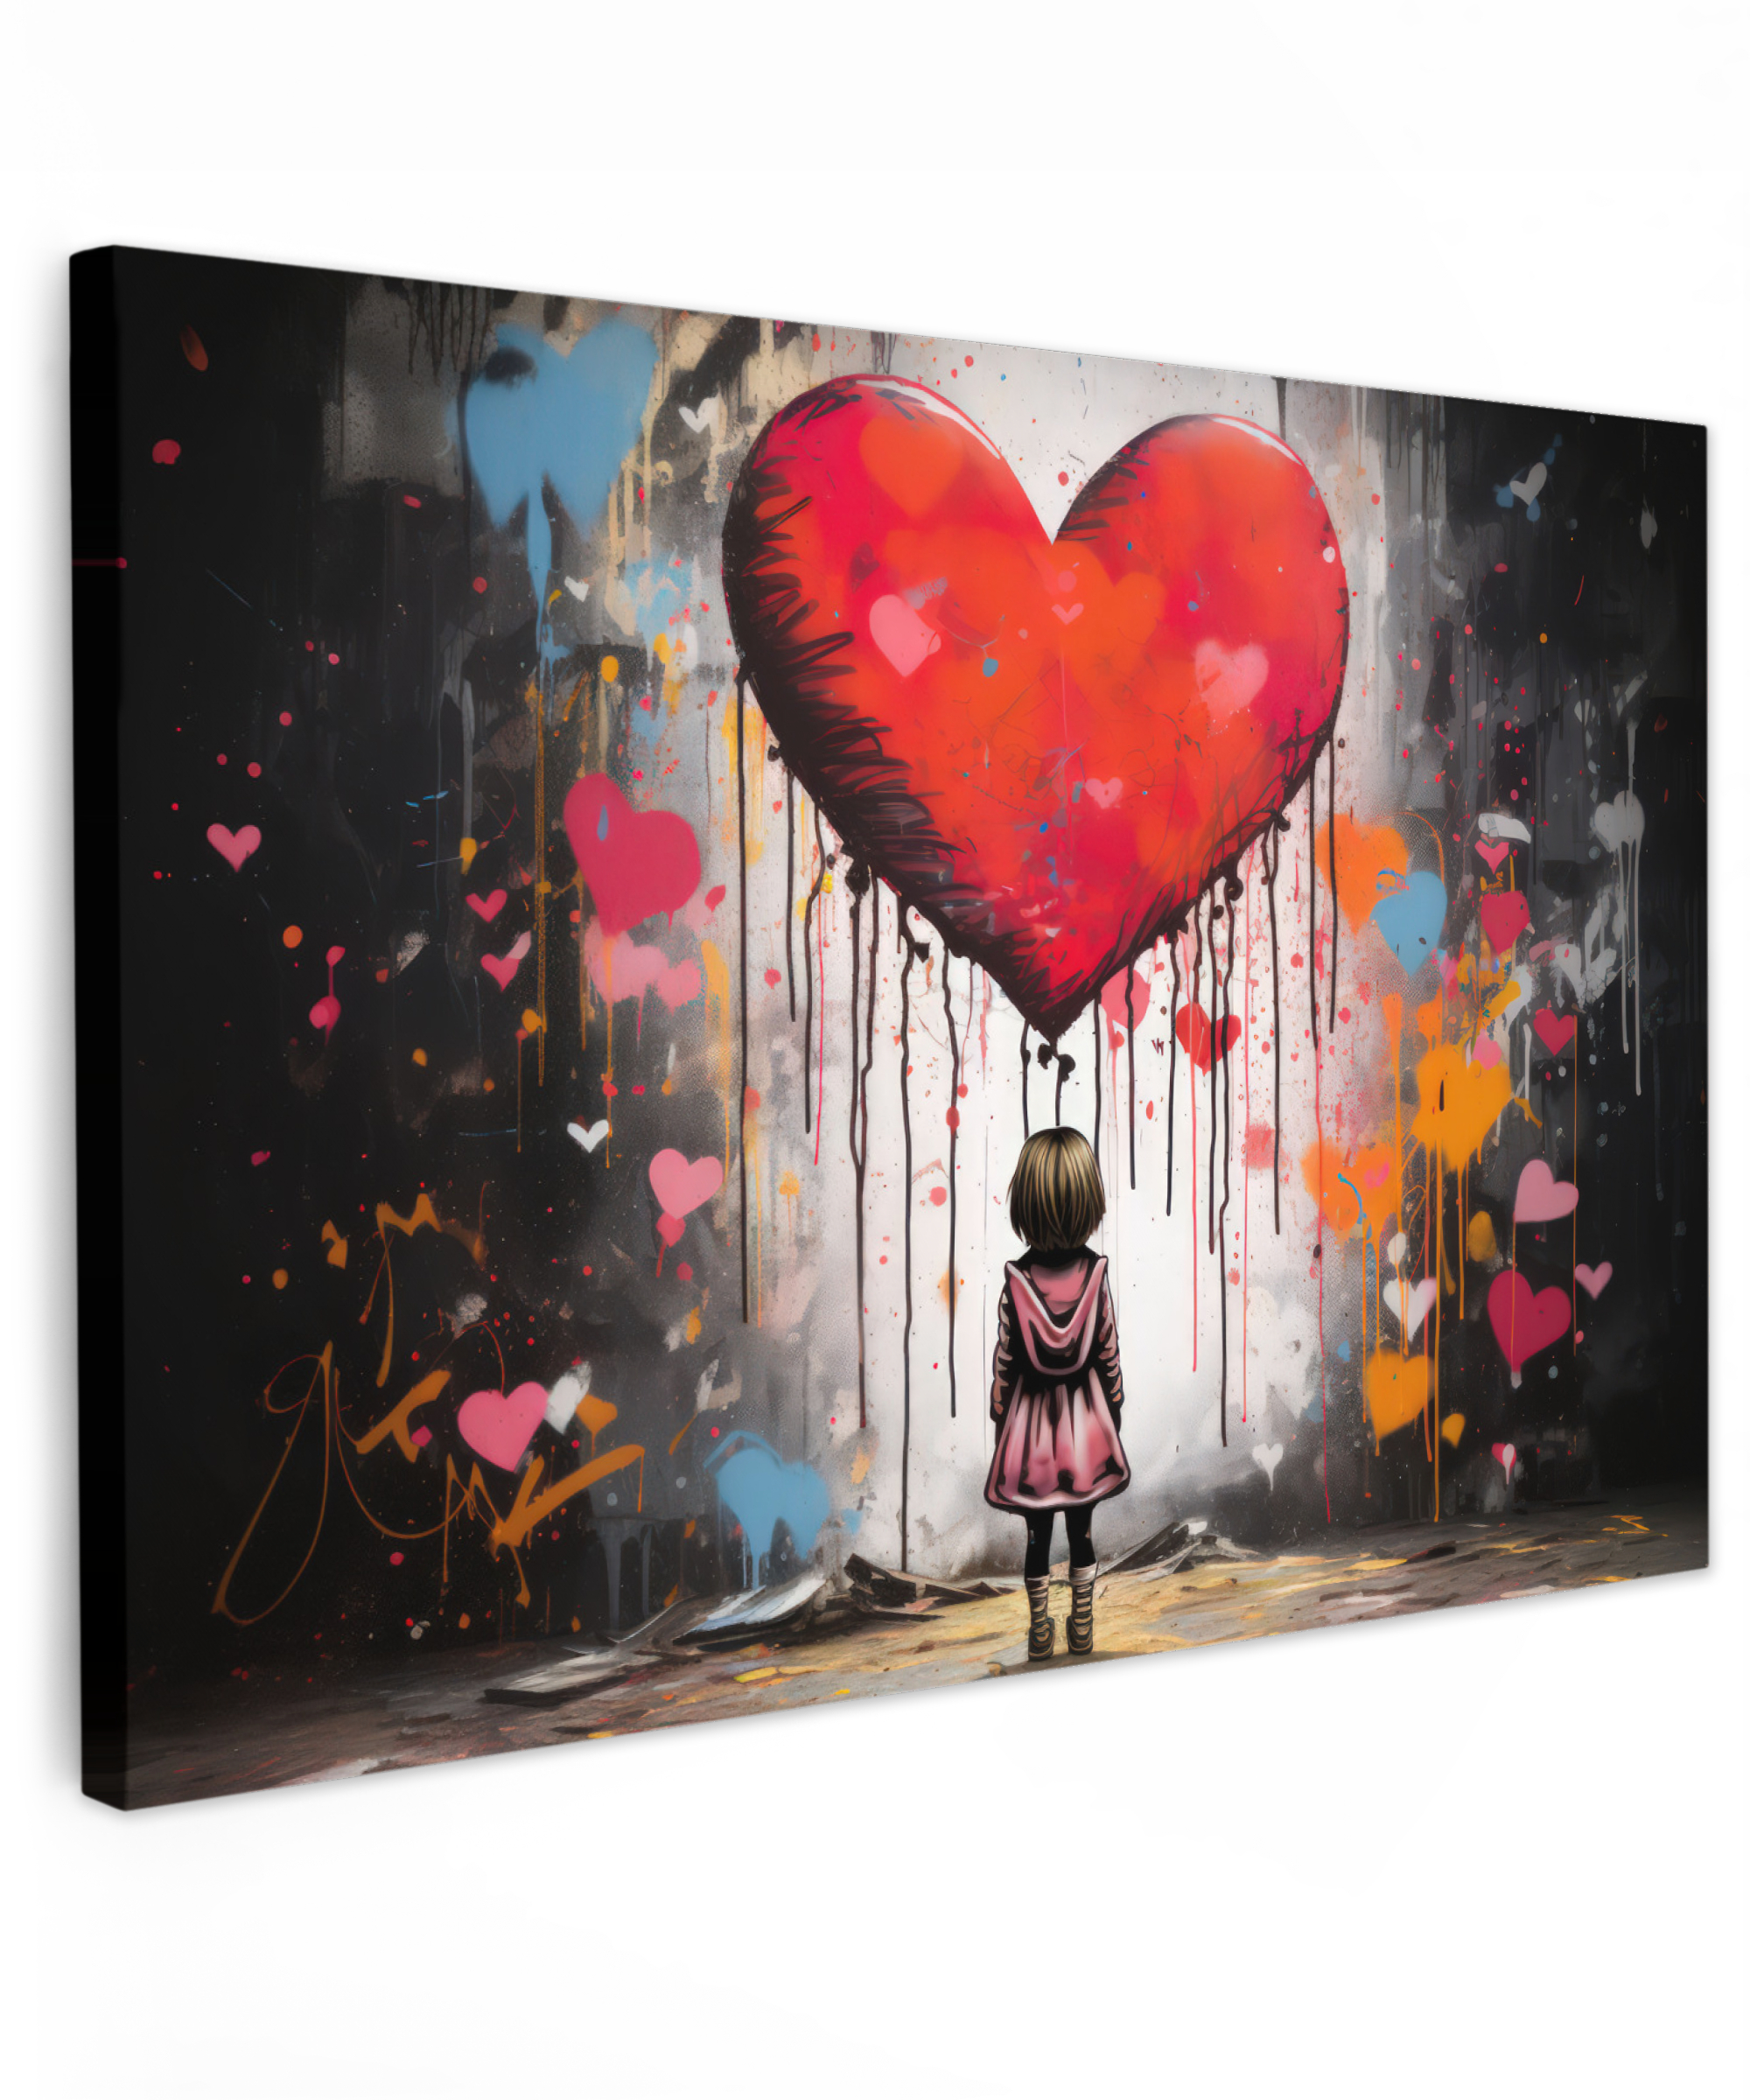 Canvas schilderij - Meisje - Hart - Graffiti - Kunst - Kleuren - Rood